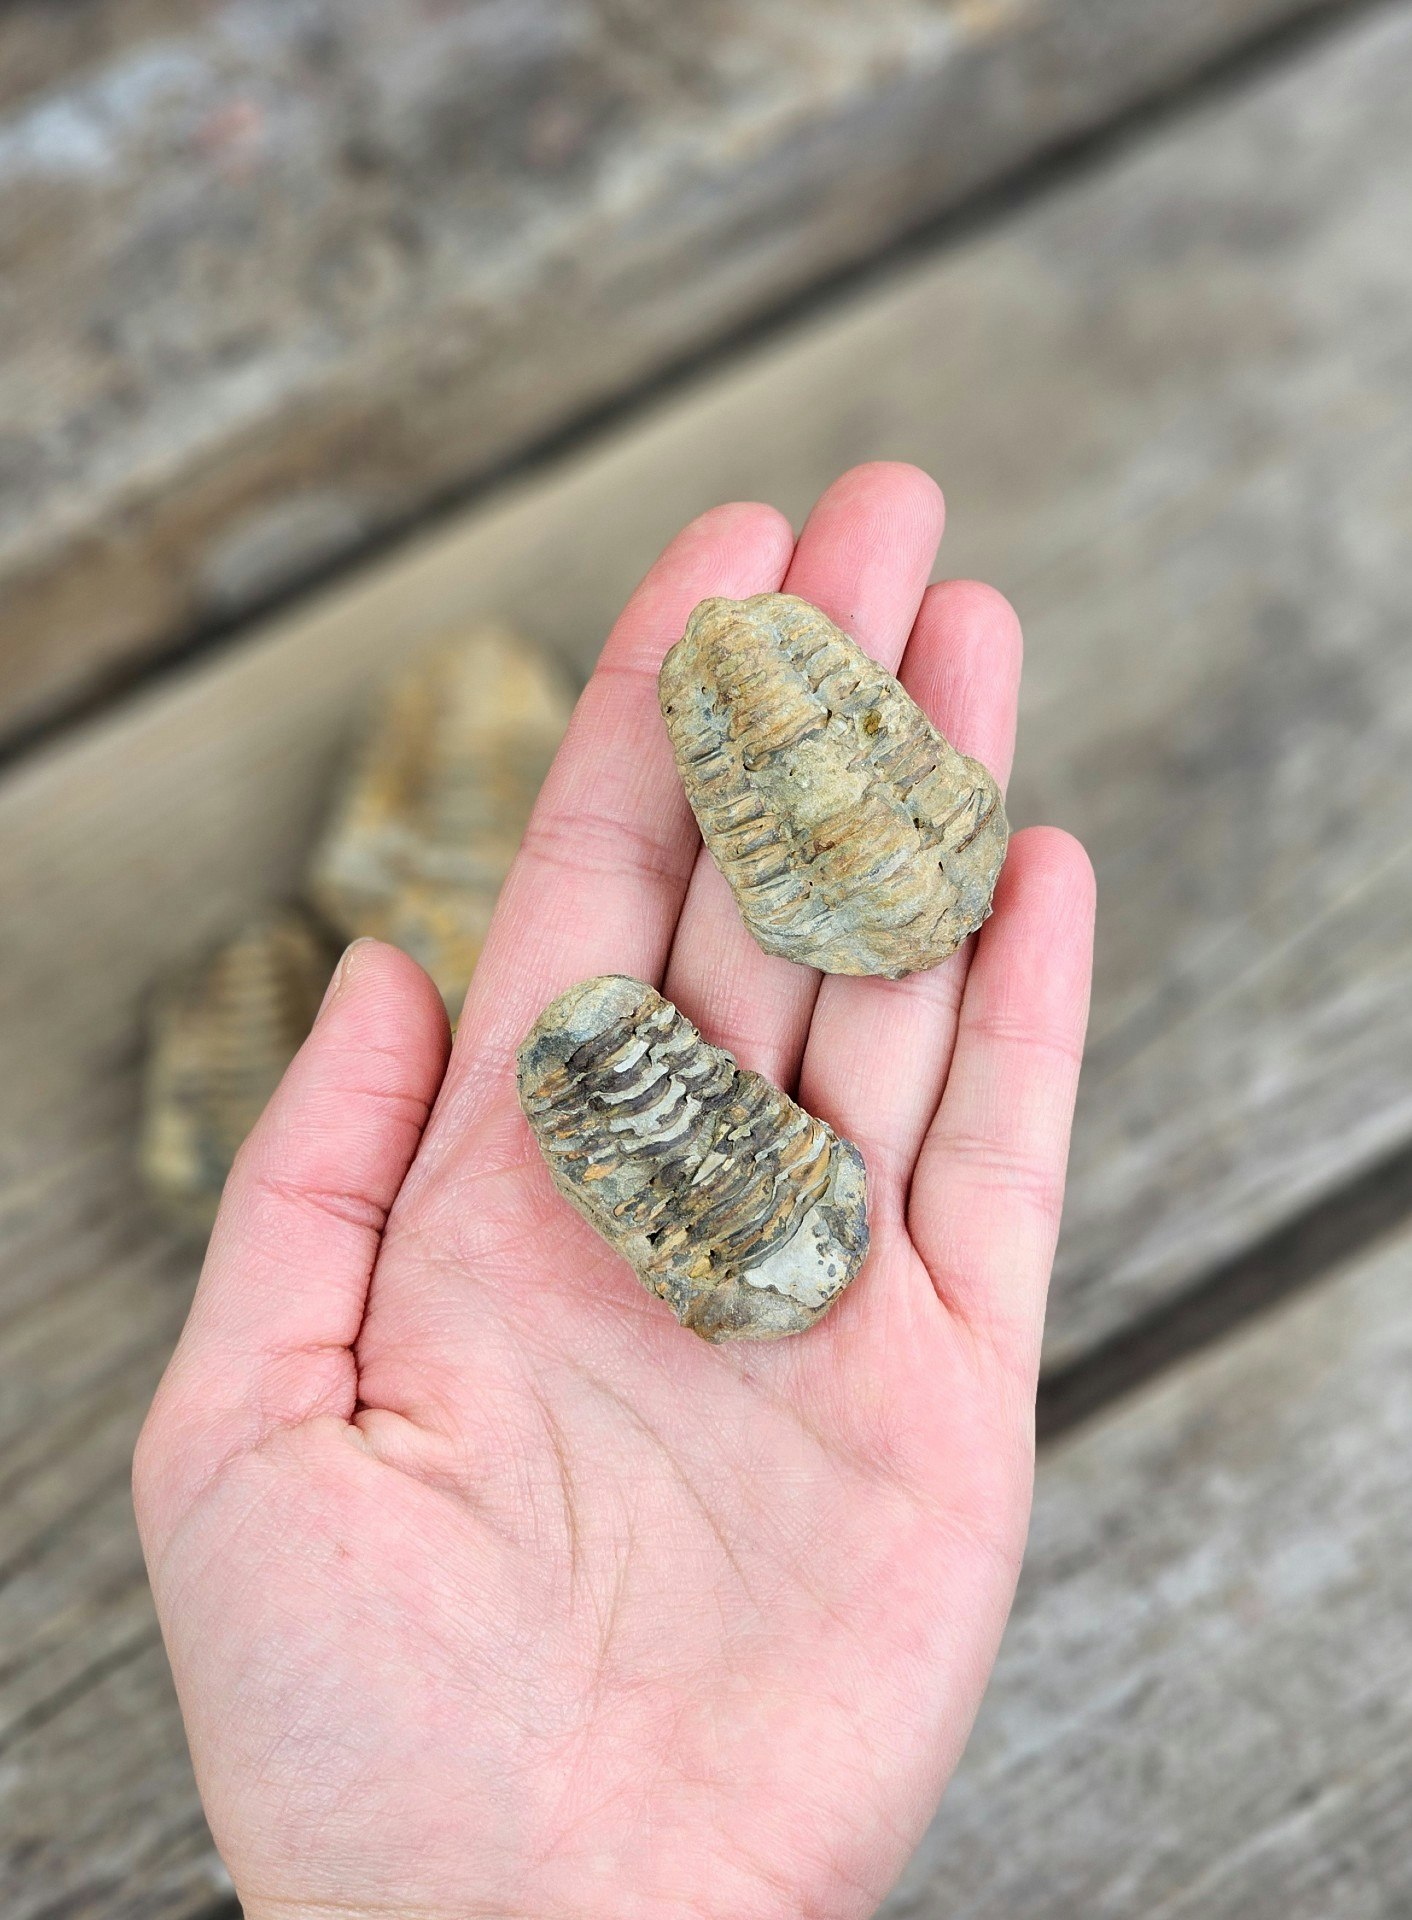 Trilobit fossil, mini per styck